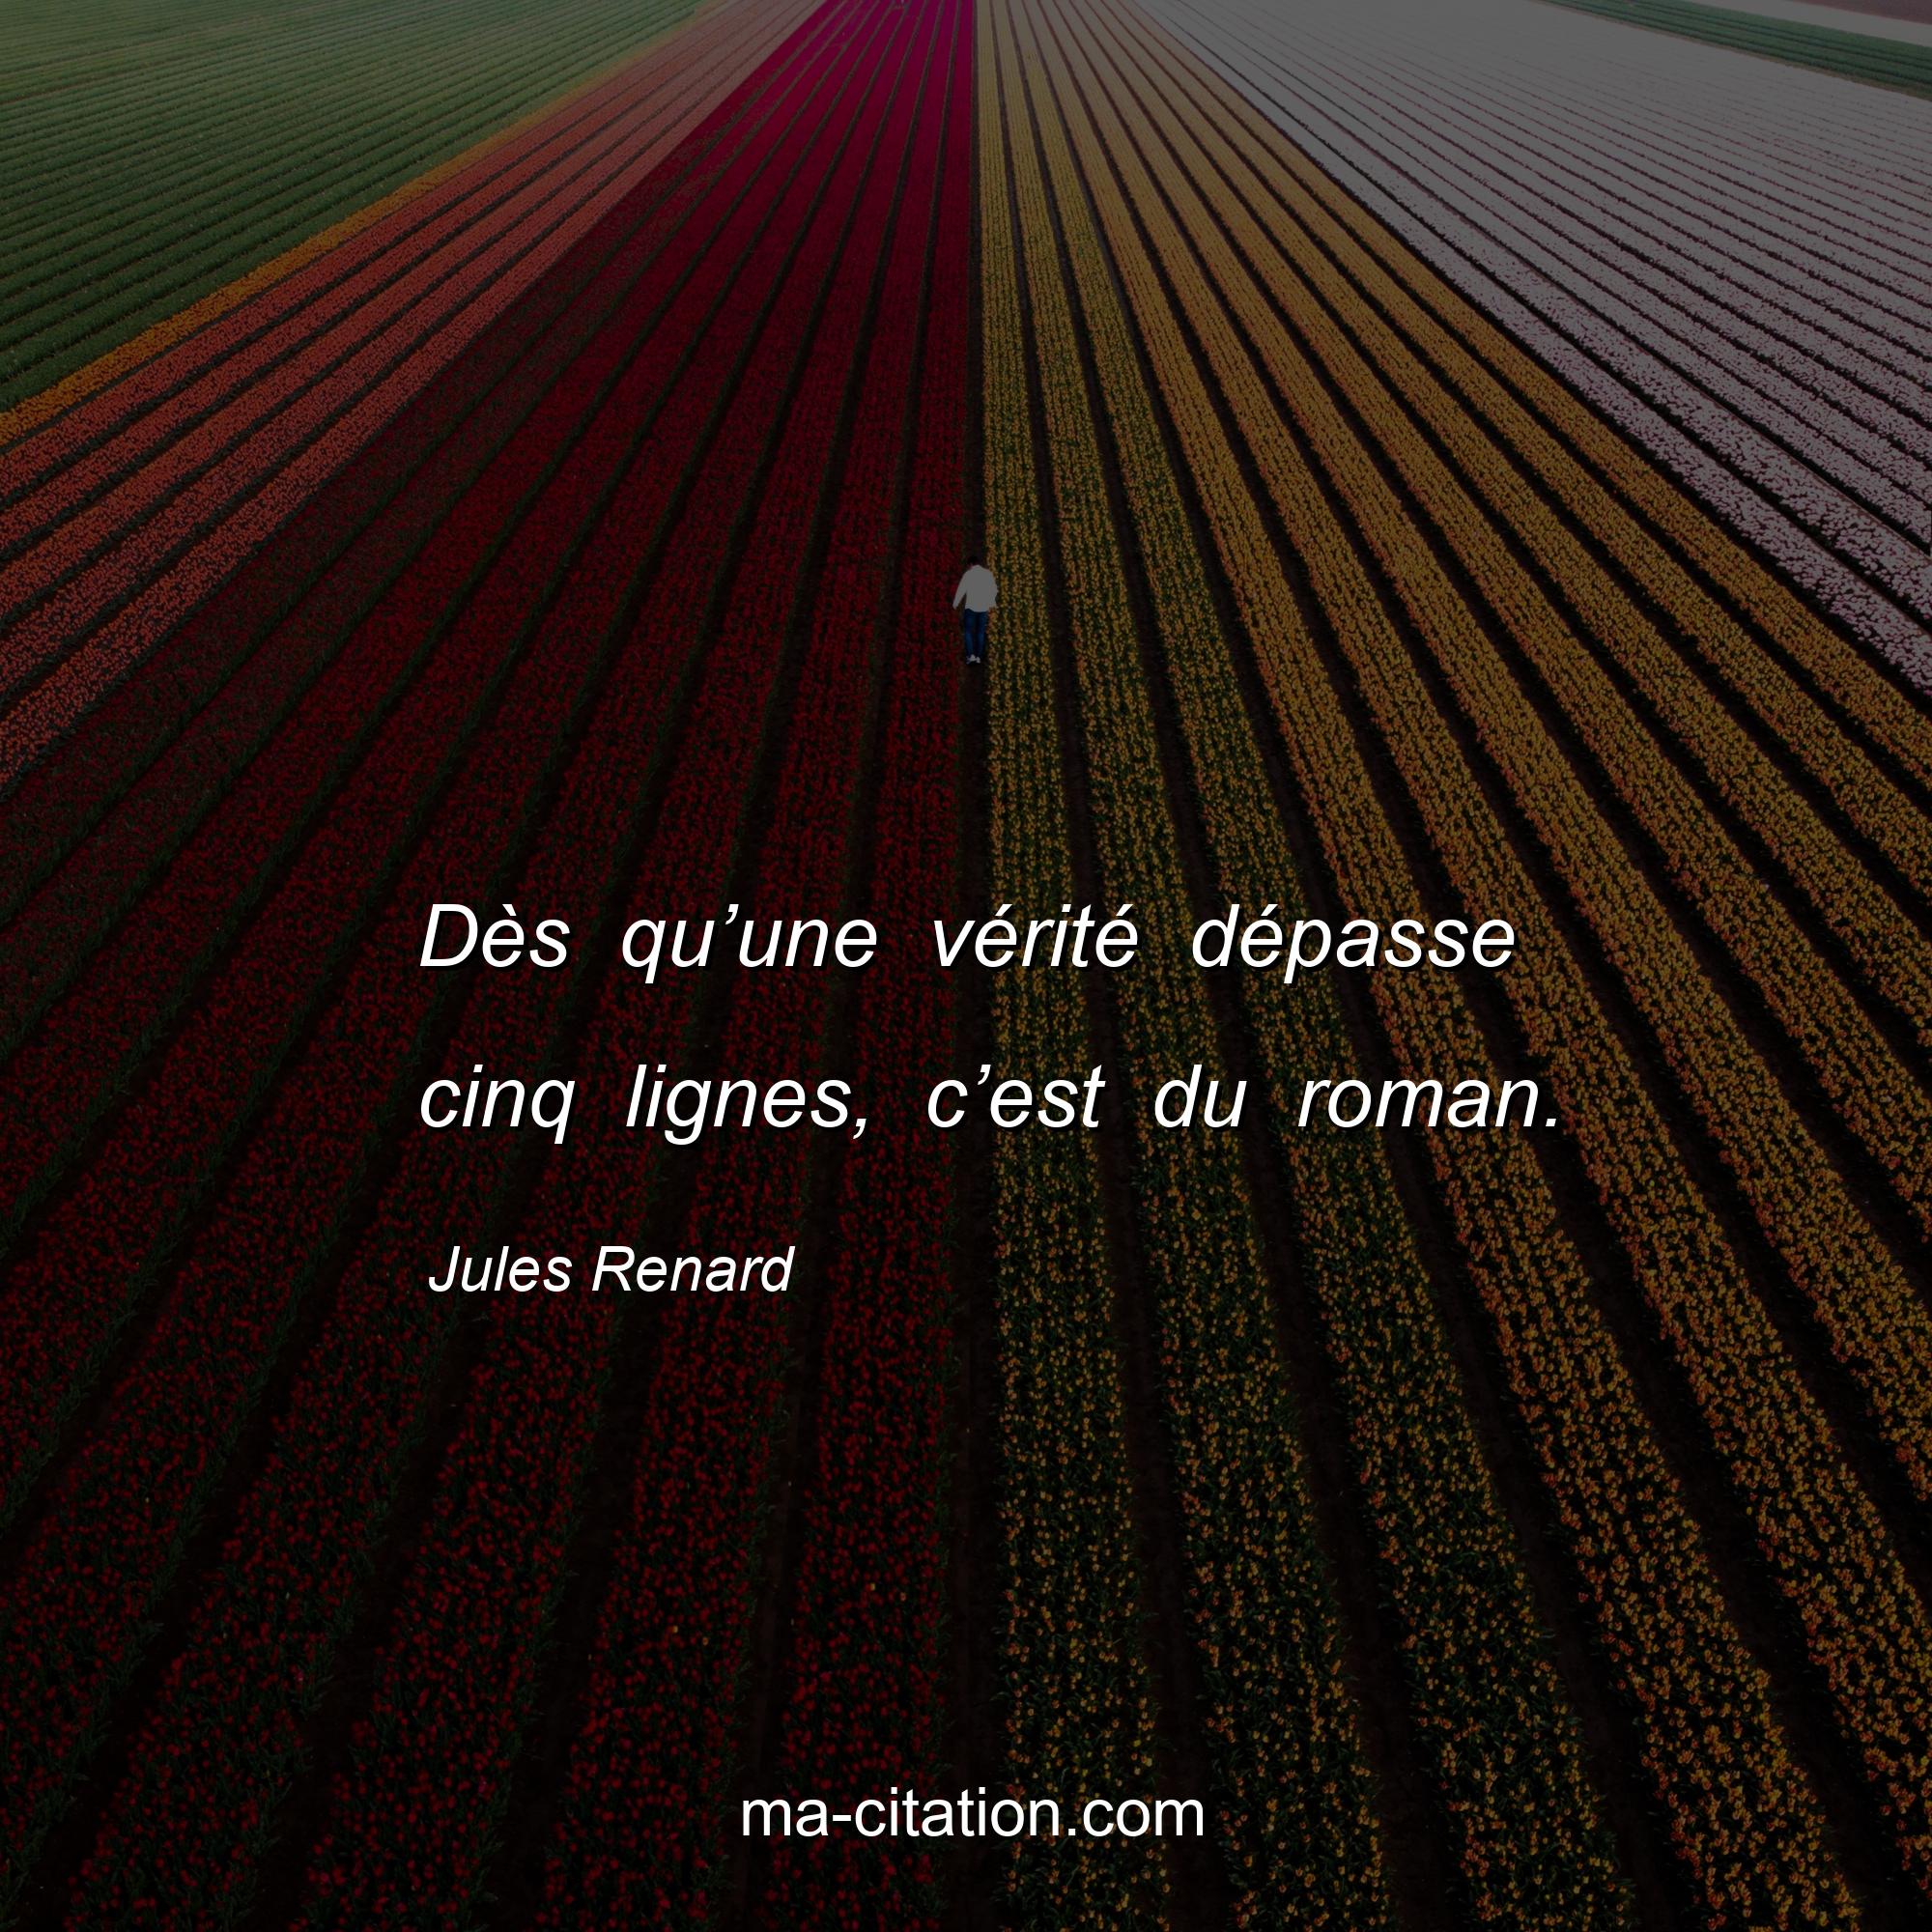 Jules Renard : Dès qu’une vérité dépasse cinq lignes, c’est du roman.